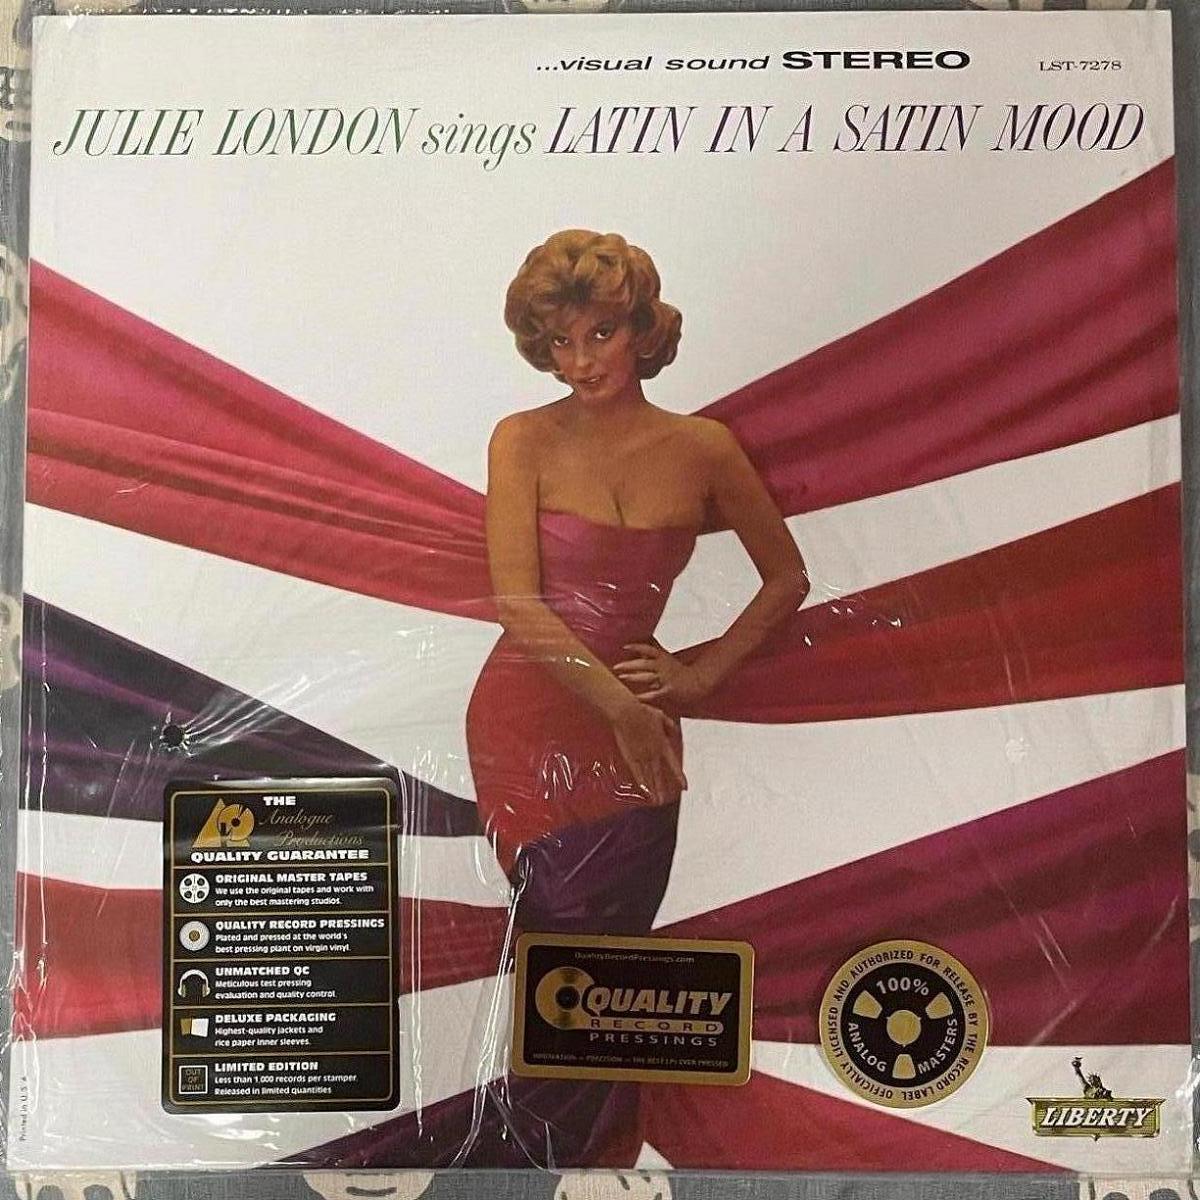 ♪美品♪Julie London - Julie London Sings Latin In A Satin Mood/再生2回/音飛びなし/高音質盤/45回転/200g重量盤/Analogue Productions